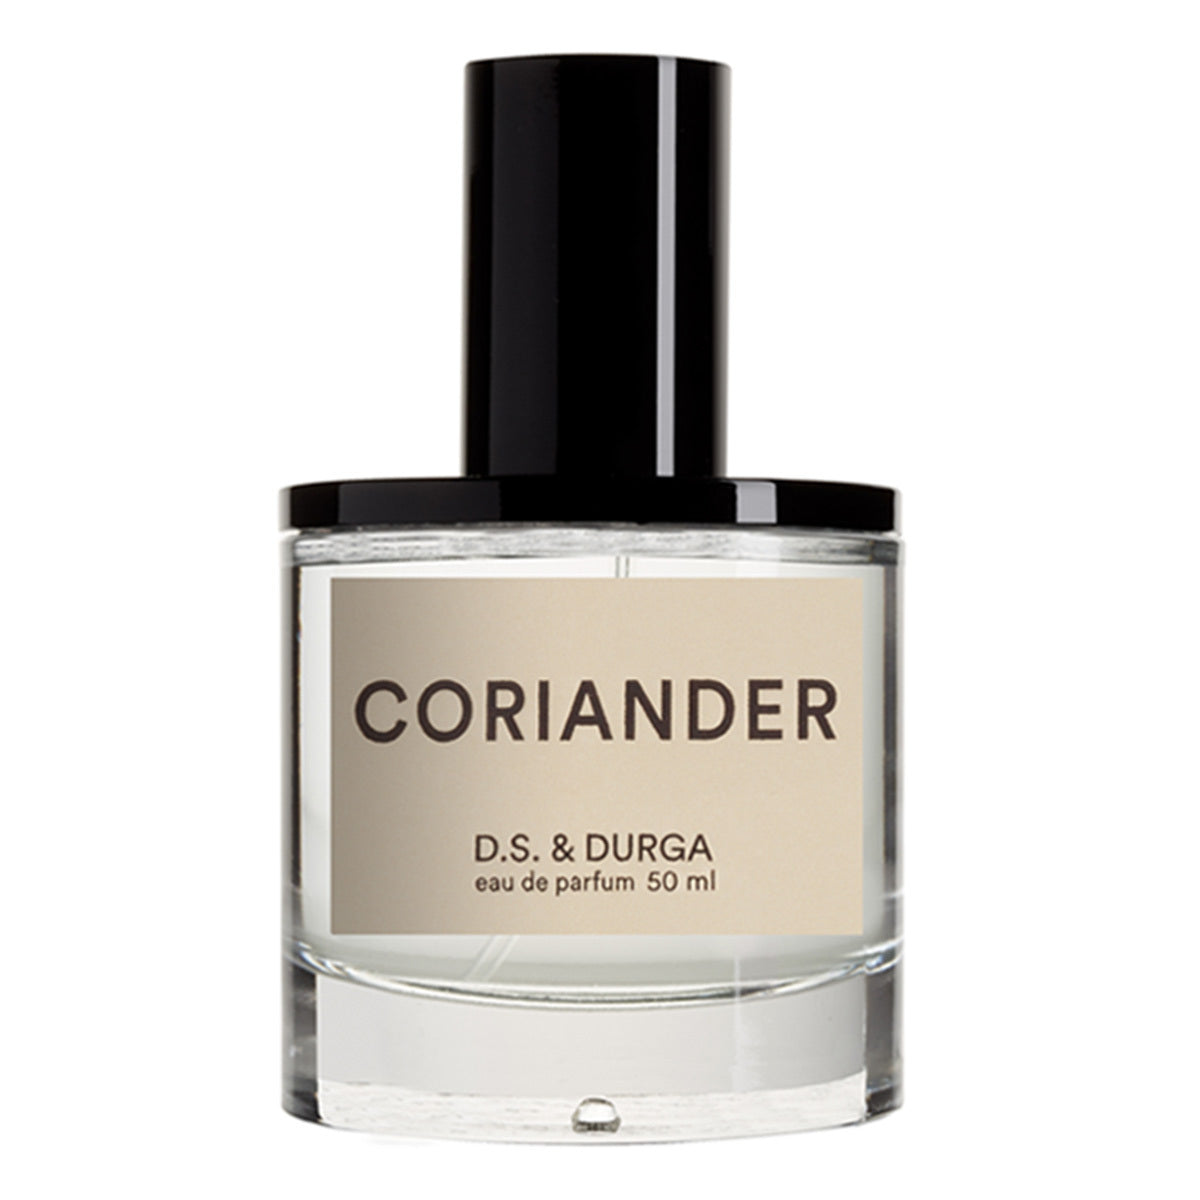 Primary image of Coriander Eau De Parfum